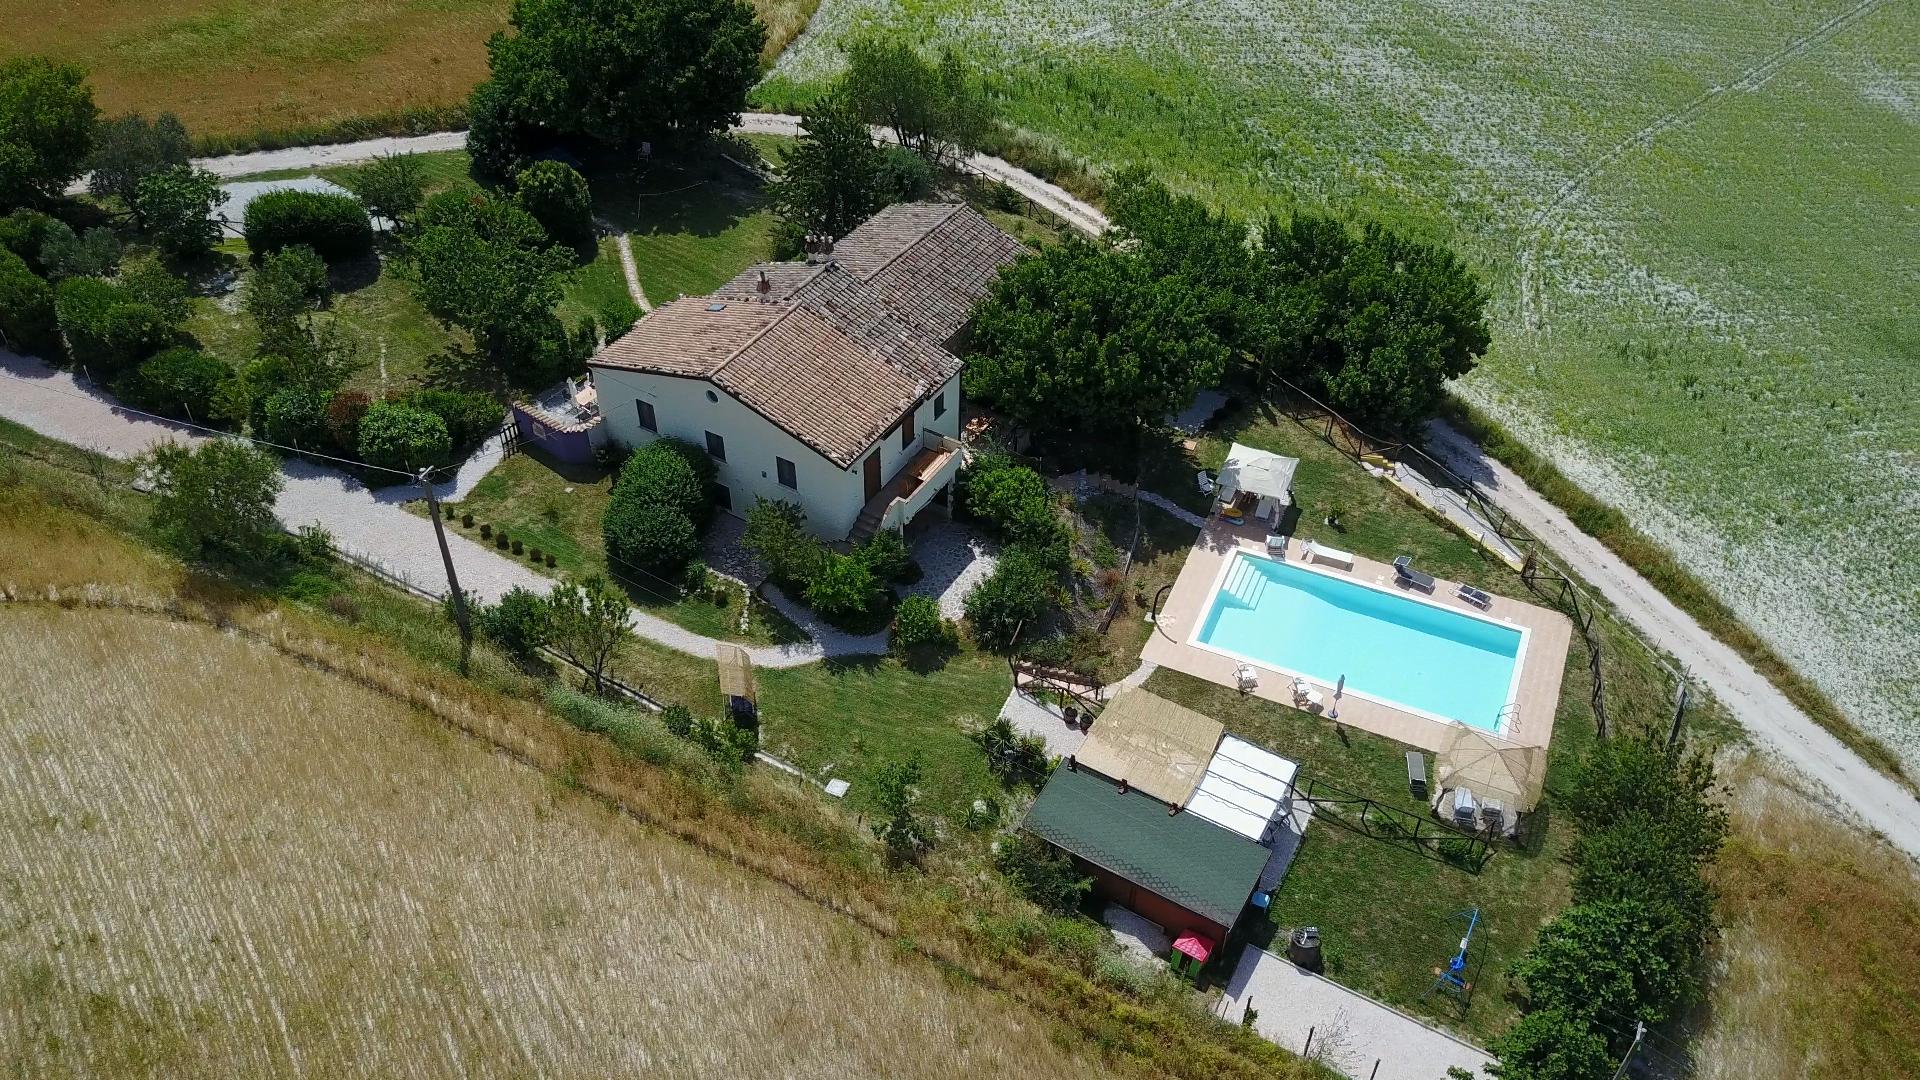 Ferienwohnung für 4 Personen ca. 50 m² i Ferienhaus in Italien